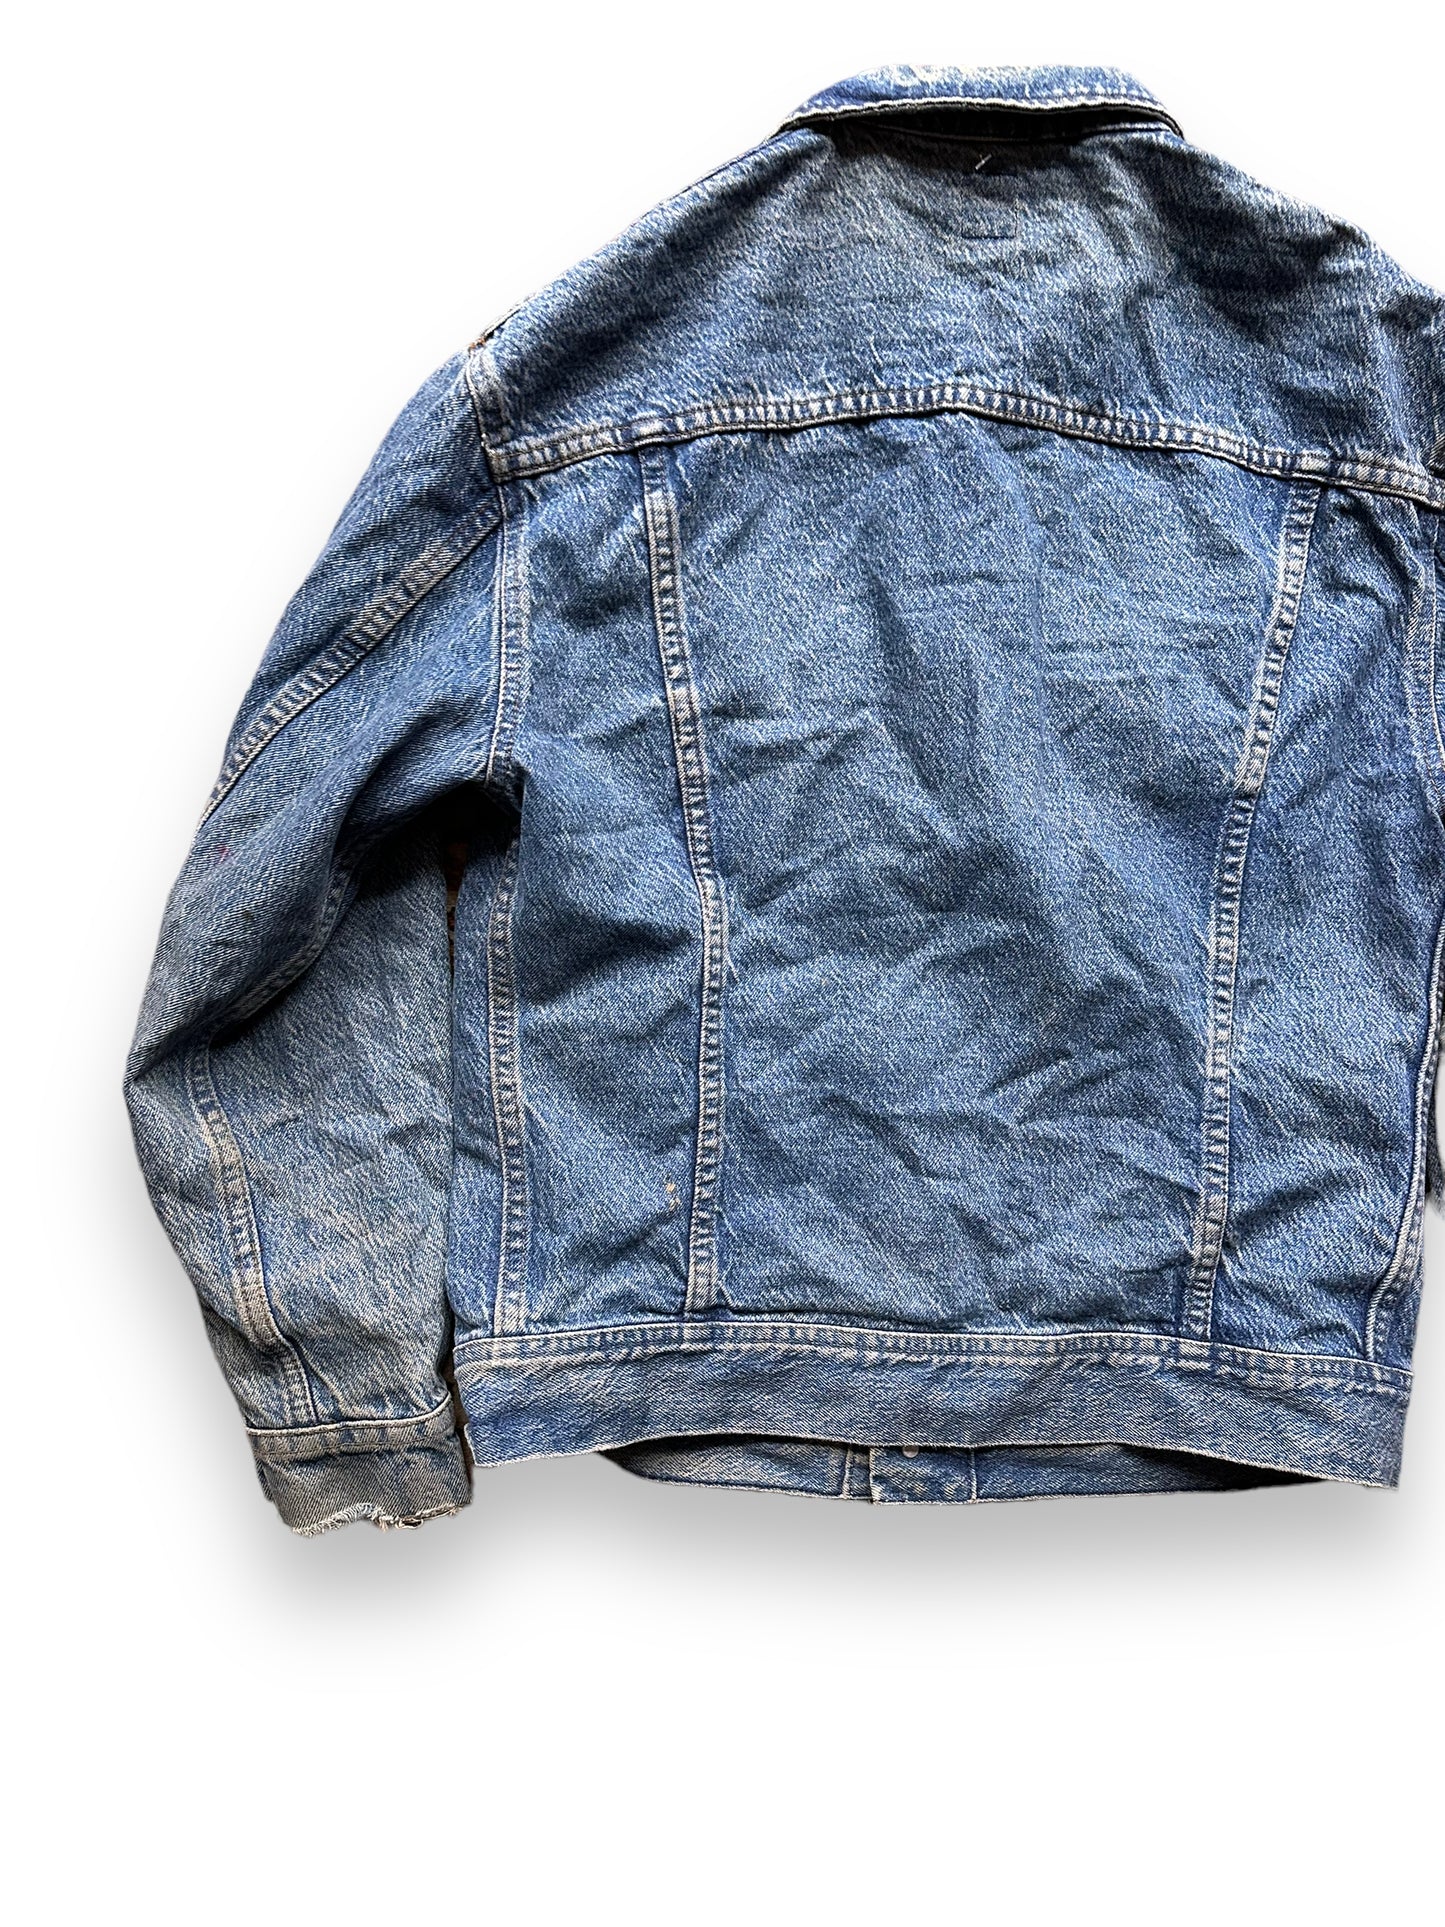 Left Rear View of Vintage Lee 101-J Denim Jacket SZ XL | Vintage Denim Workwear Seattle | Seattle Vintage Denim